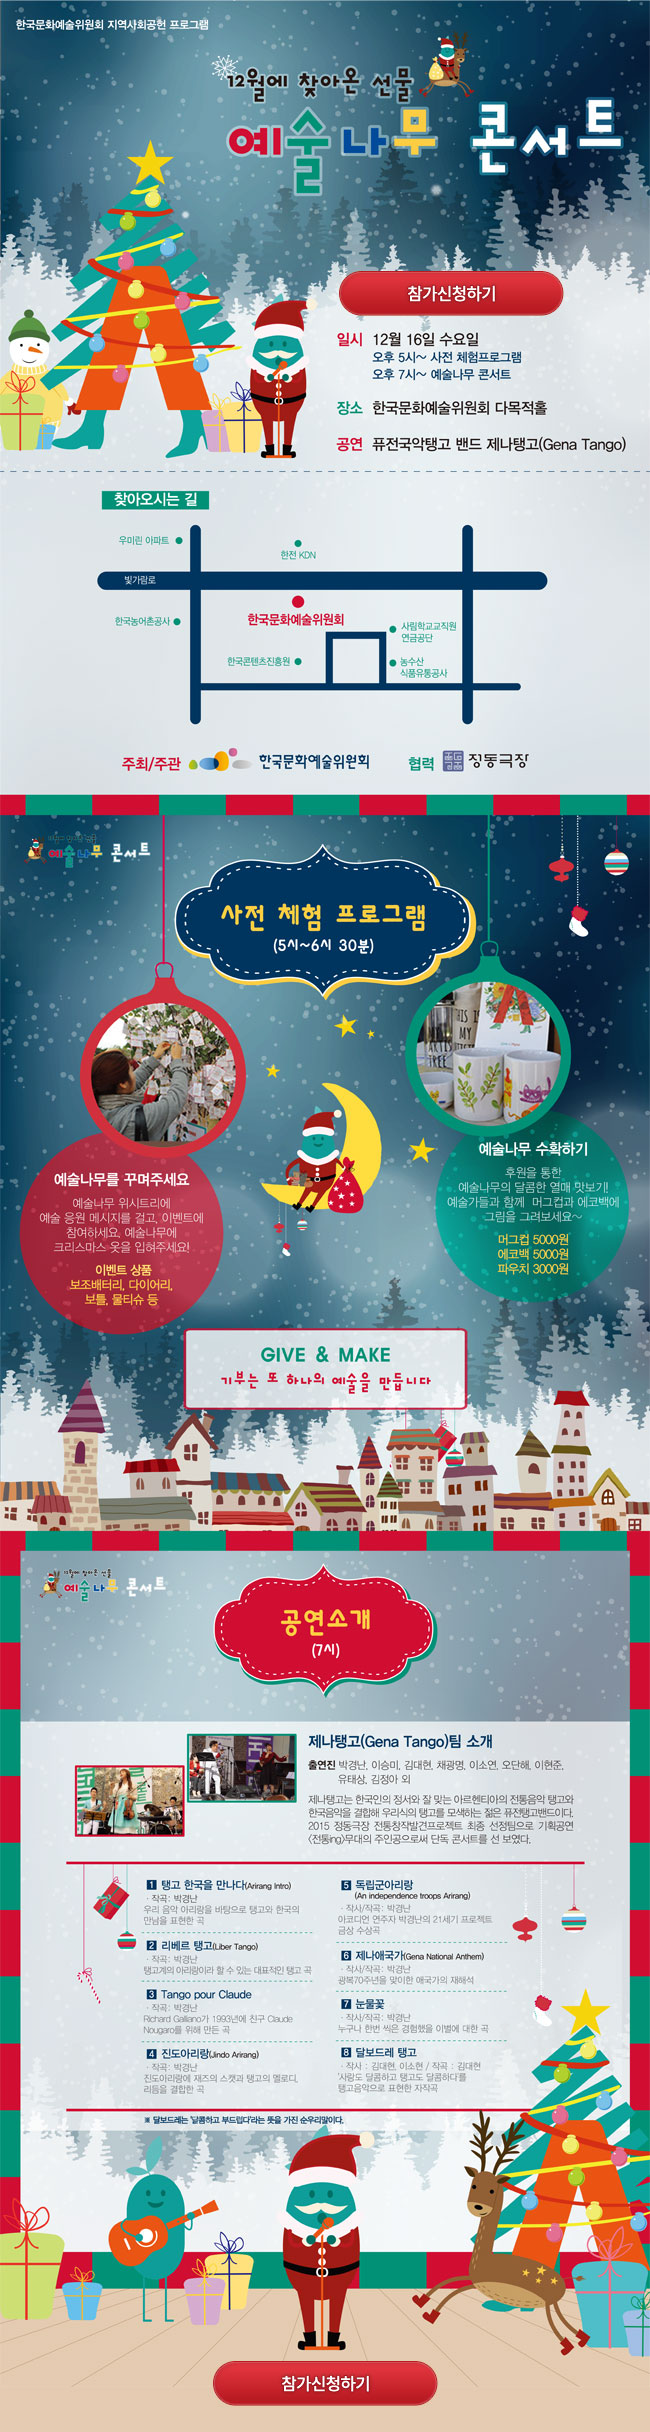 한국문화예술위원회 지역사회공헌 프로그램,예술나무 콘서트